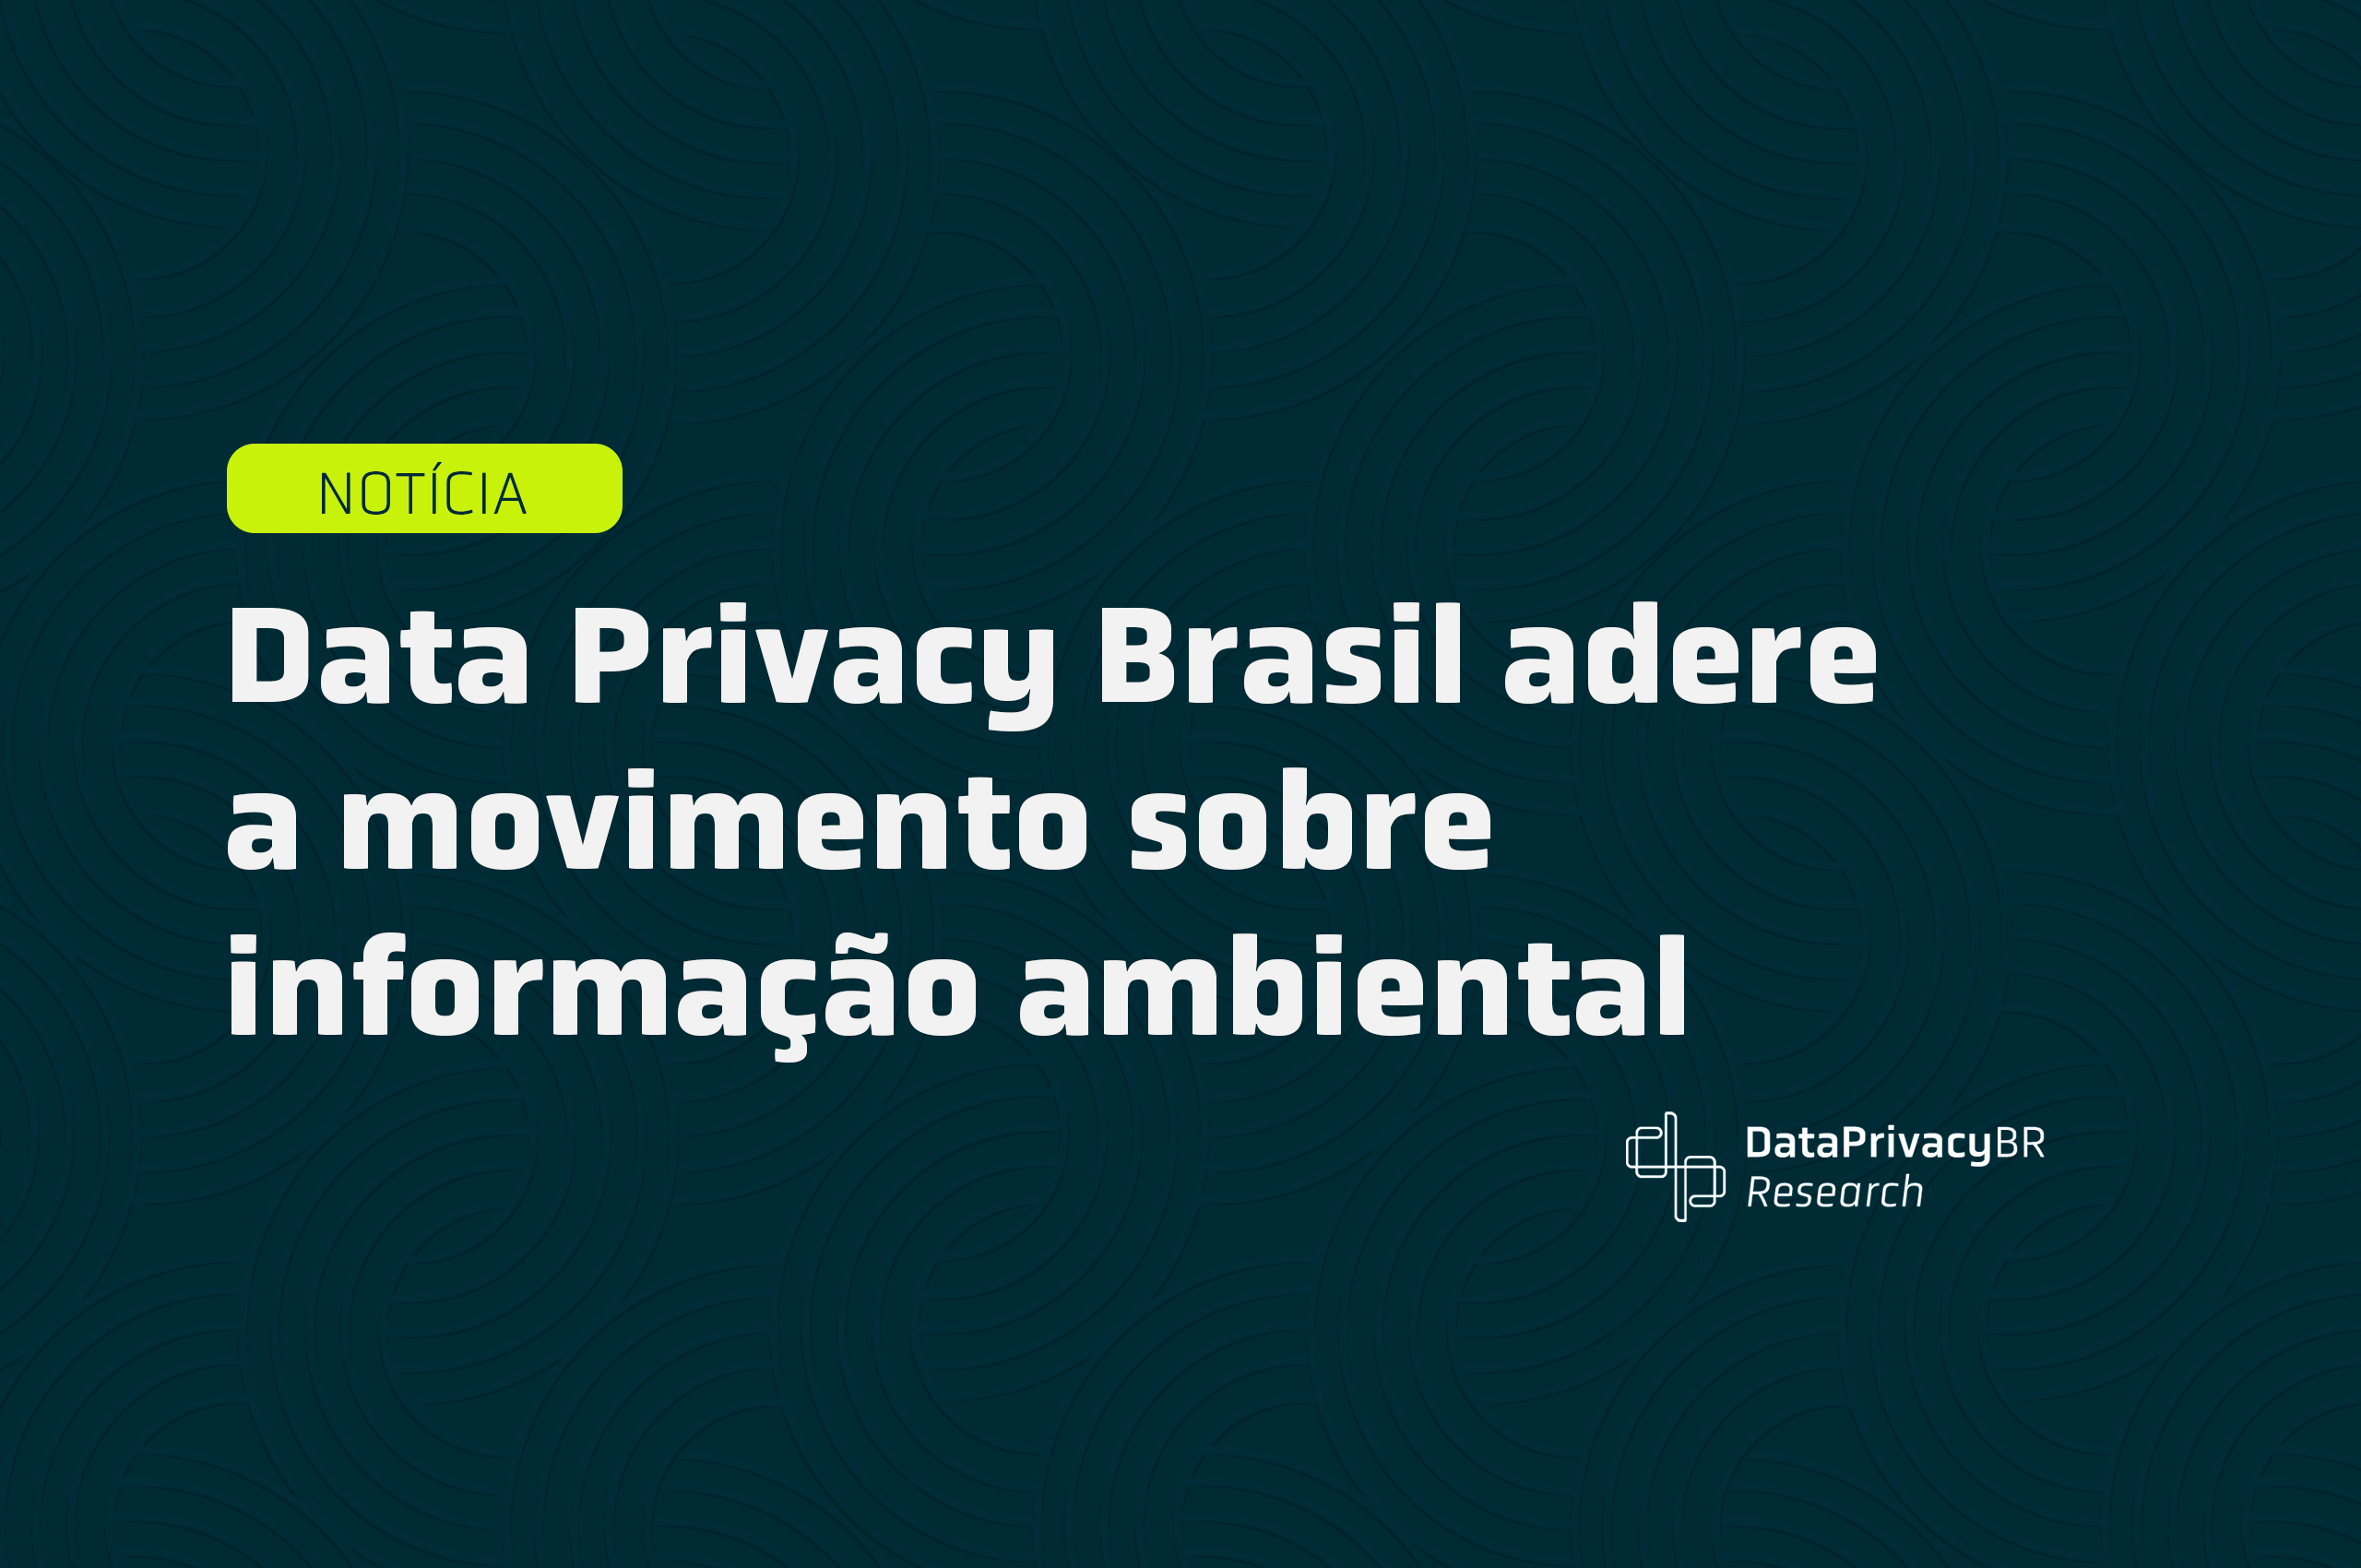  Data Privacy Brasil adere a movimento sobre informação ambiental